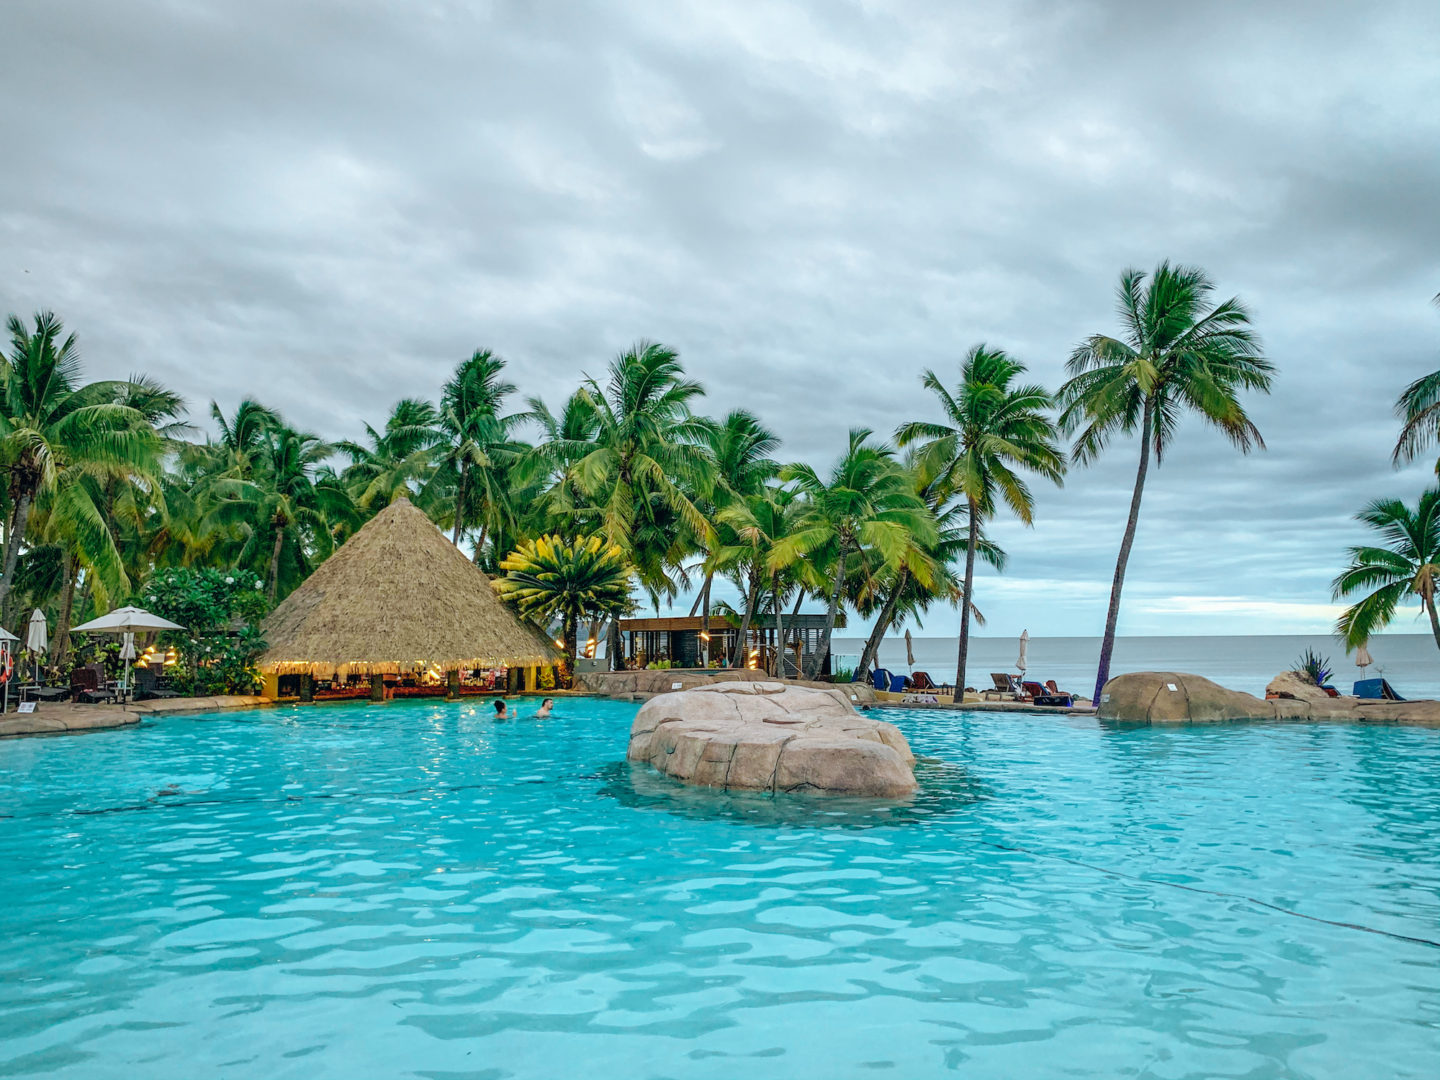 Lagoon-style pool at DoubleTree by Hilton Fiji Resort - Viti Levu, Fiji